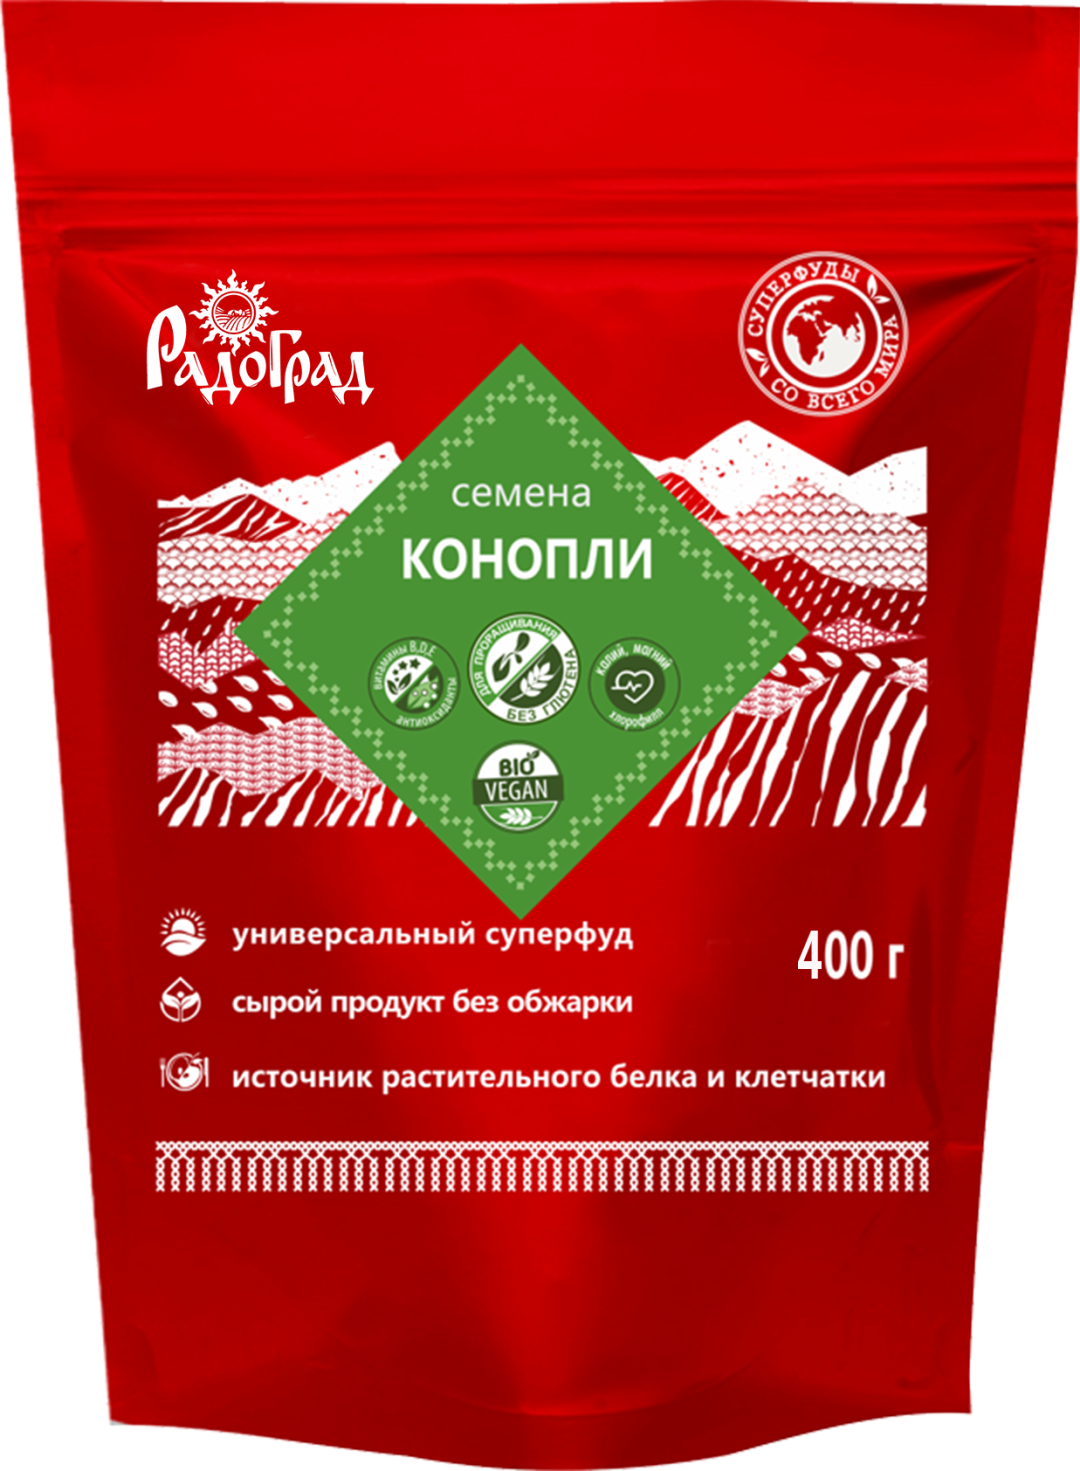 Купить онлайн Семена конопли Радоград, 400г в интернет-магазине Беришка с доставкой по Хабаровску и по России недорого.